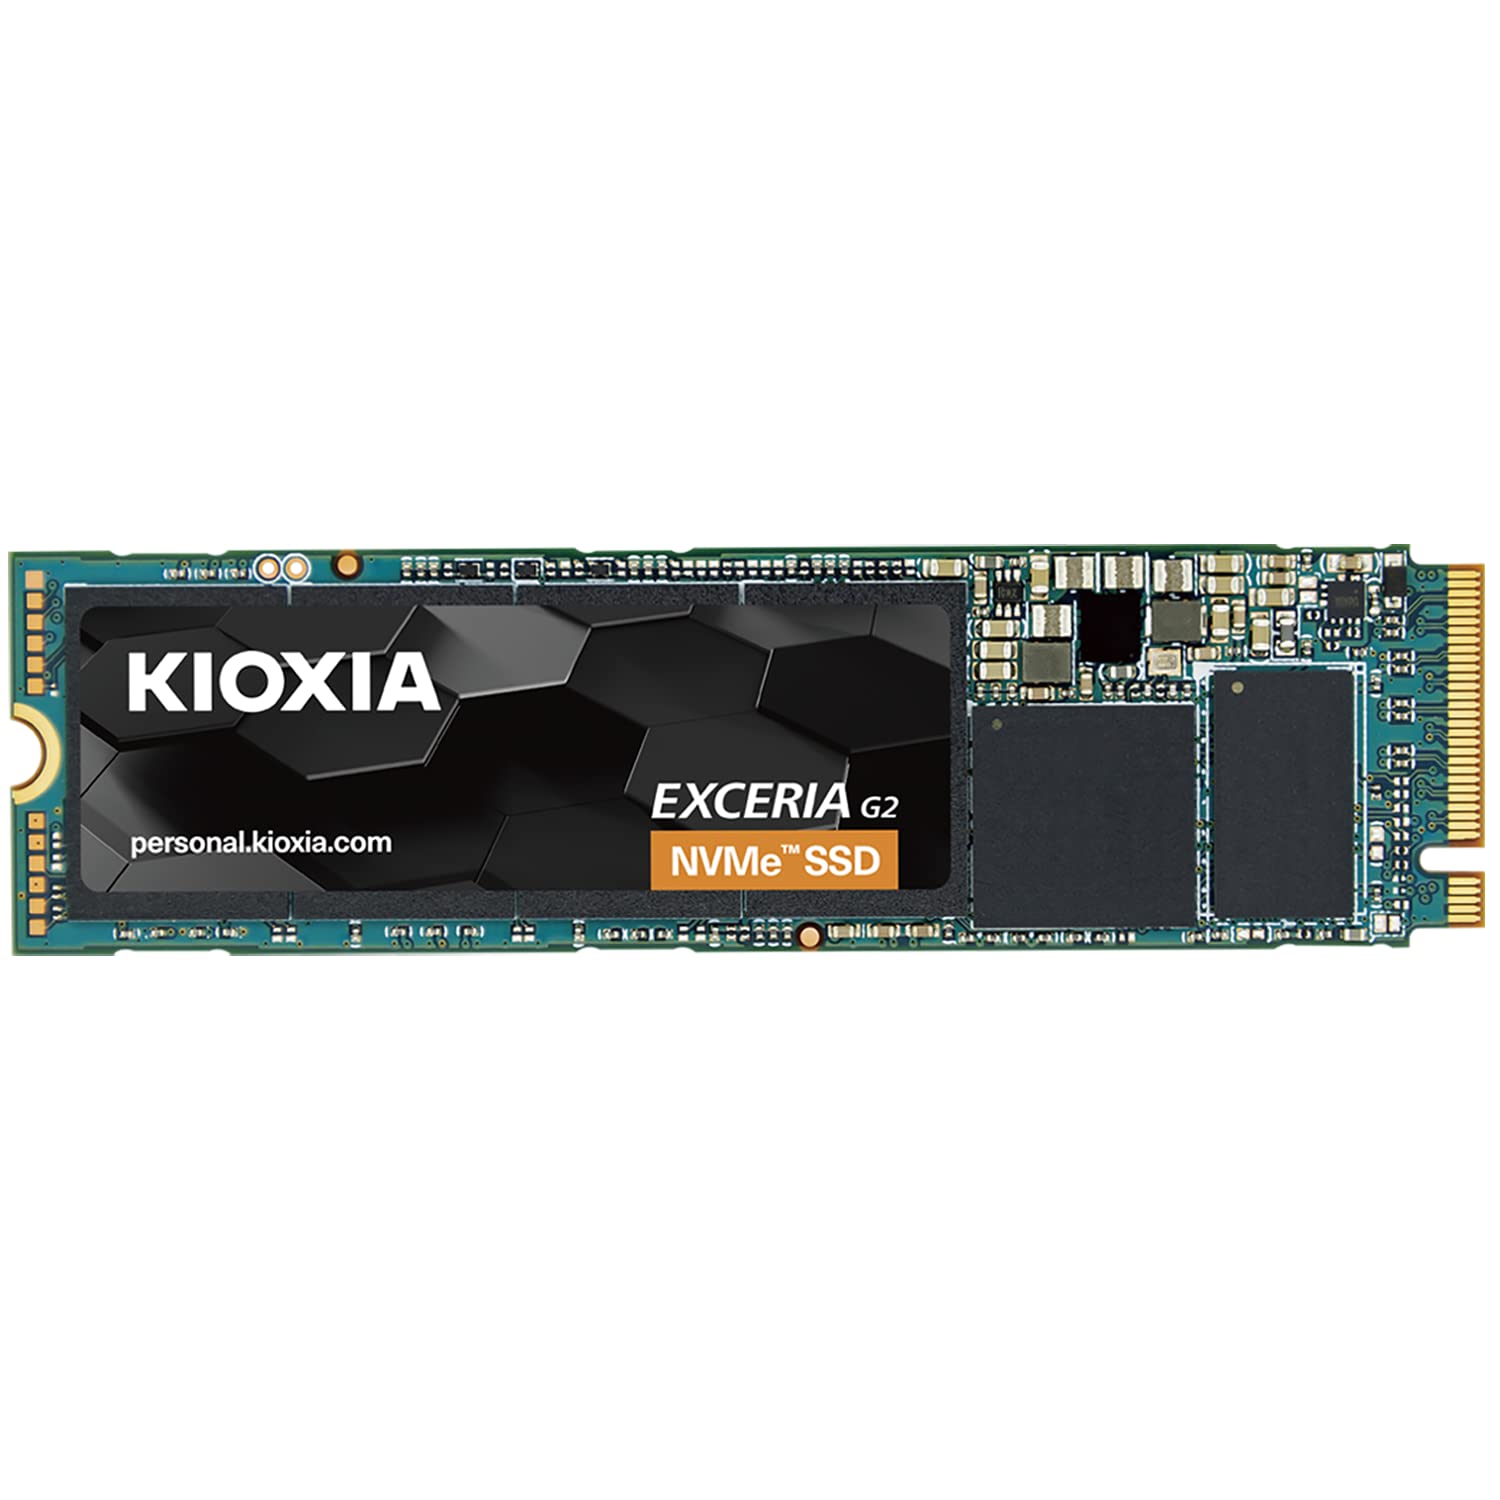 キオクシア KIOXIA 内蔵 SSD 2TB NVMe M.2 Type 2280 PCIe Gen 3.0×4 国産BiCS FLASH T